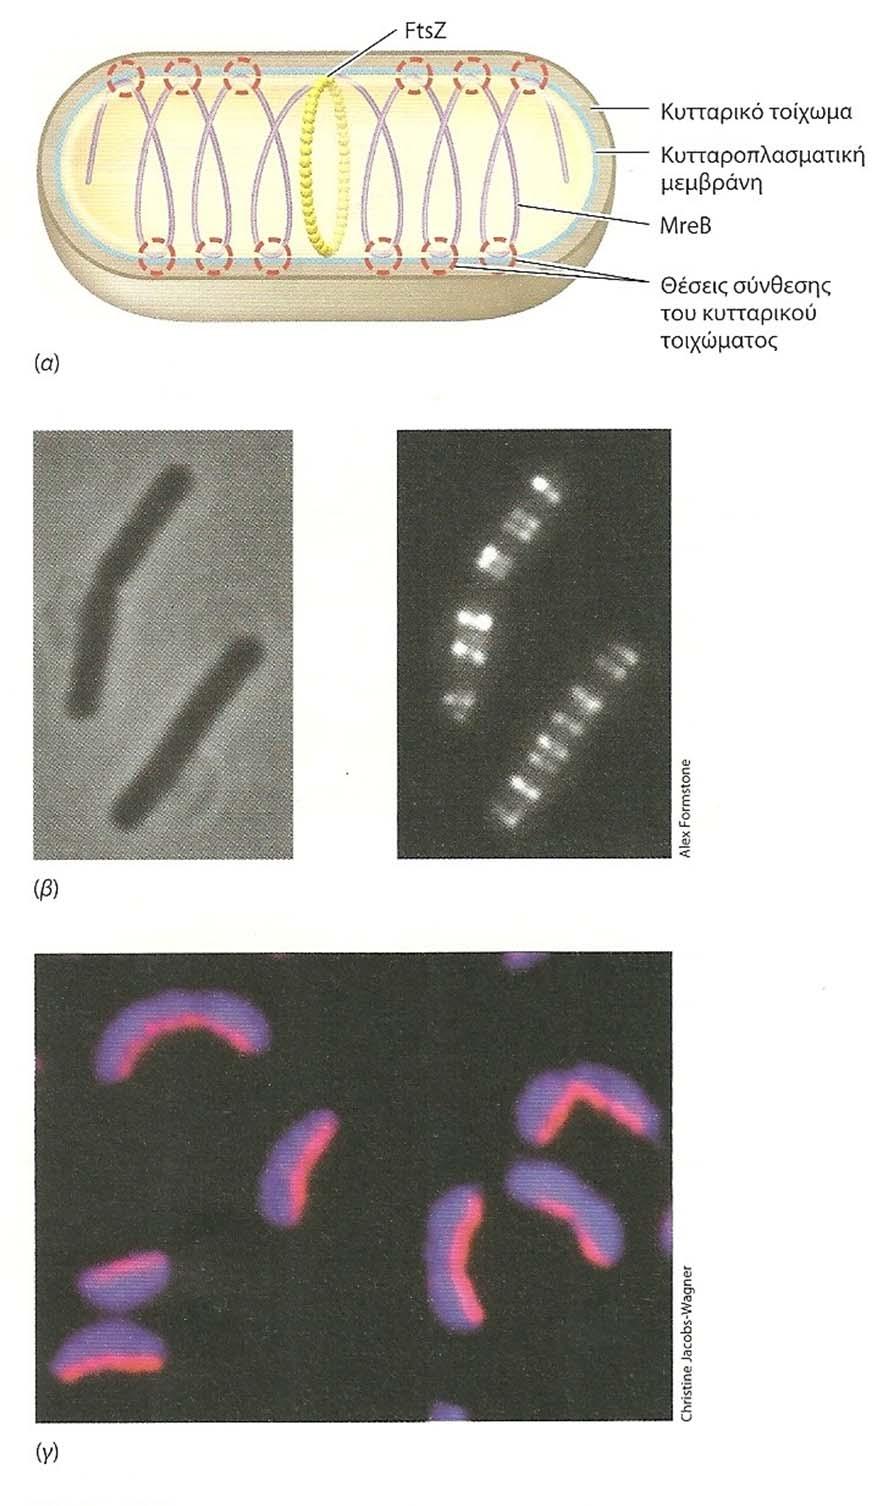 Σχ.111. Η πρωτείνη MreB και η κρεσκεντίνη ως παράγοντες που καθορίζουν την κυτταρική μορφολογία.